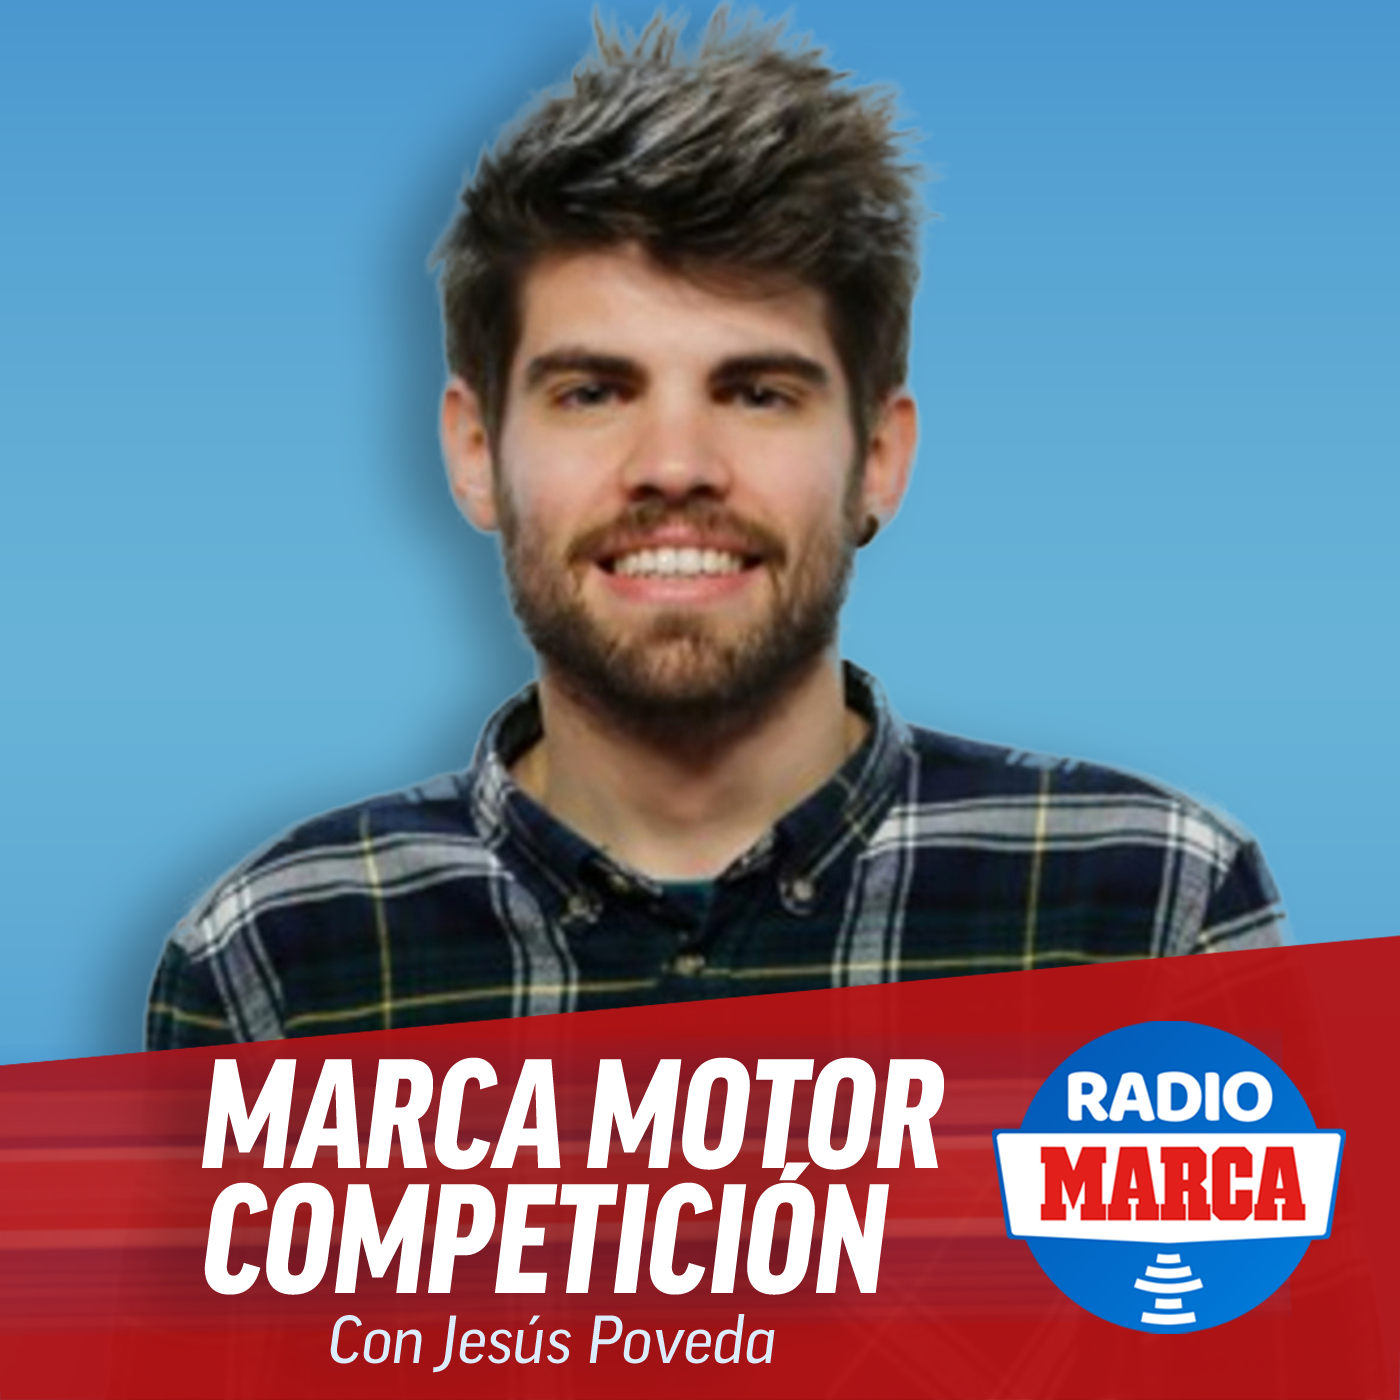 MARCA Motor Competición (1-8-2021)